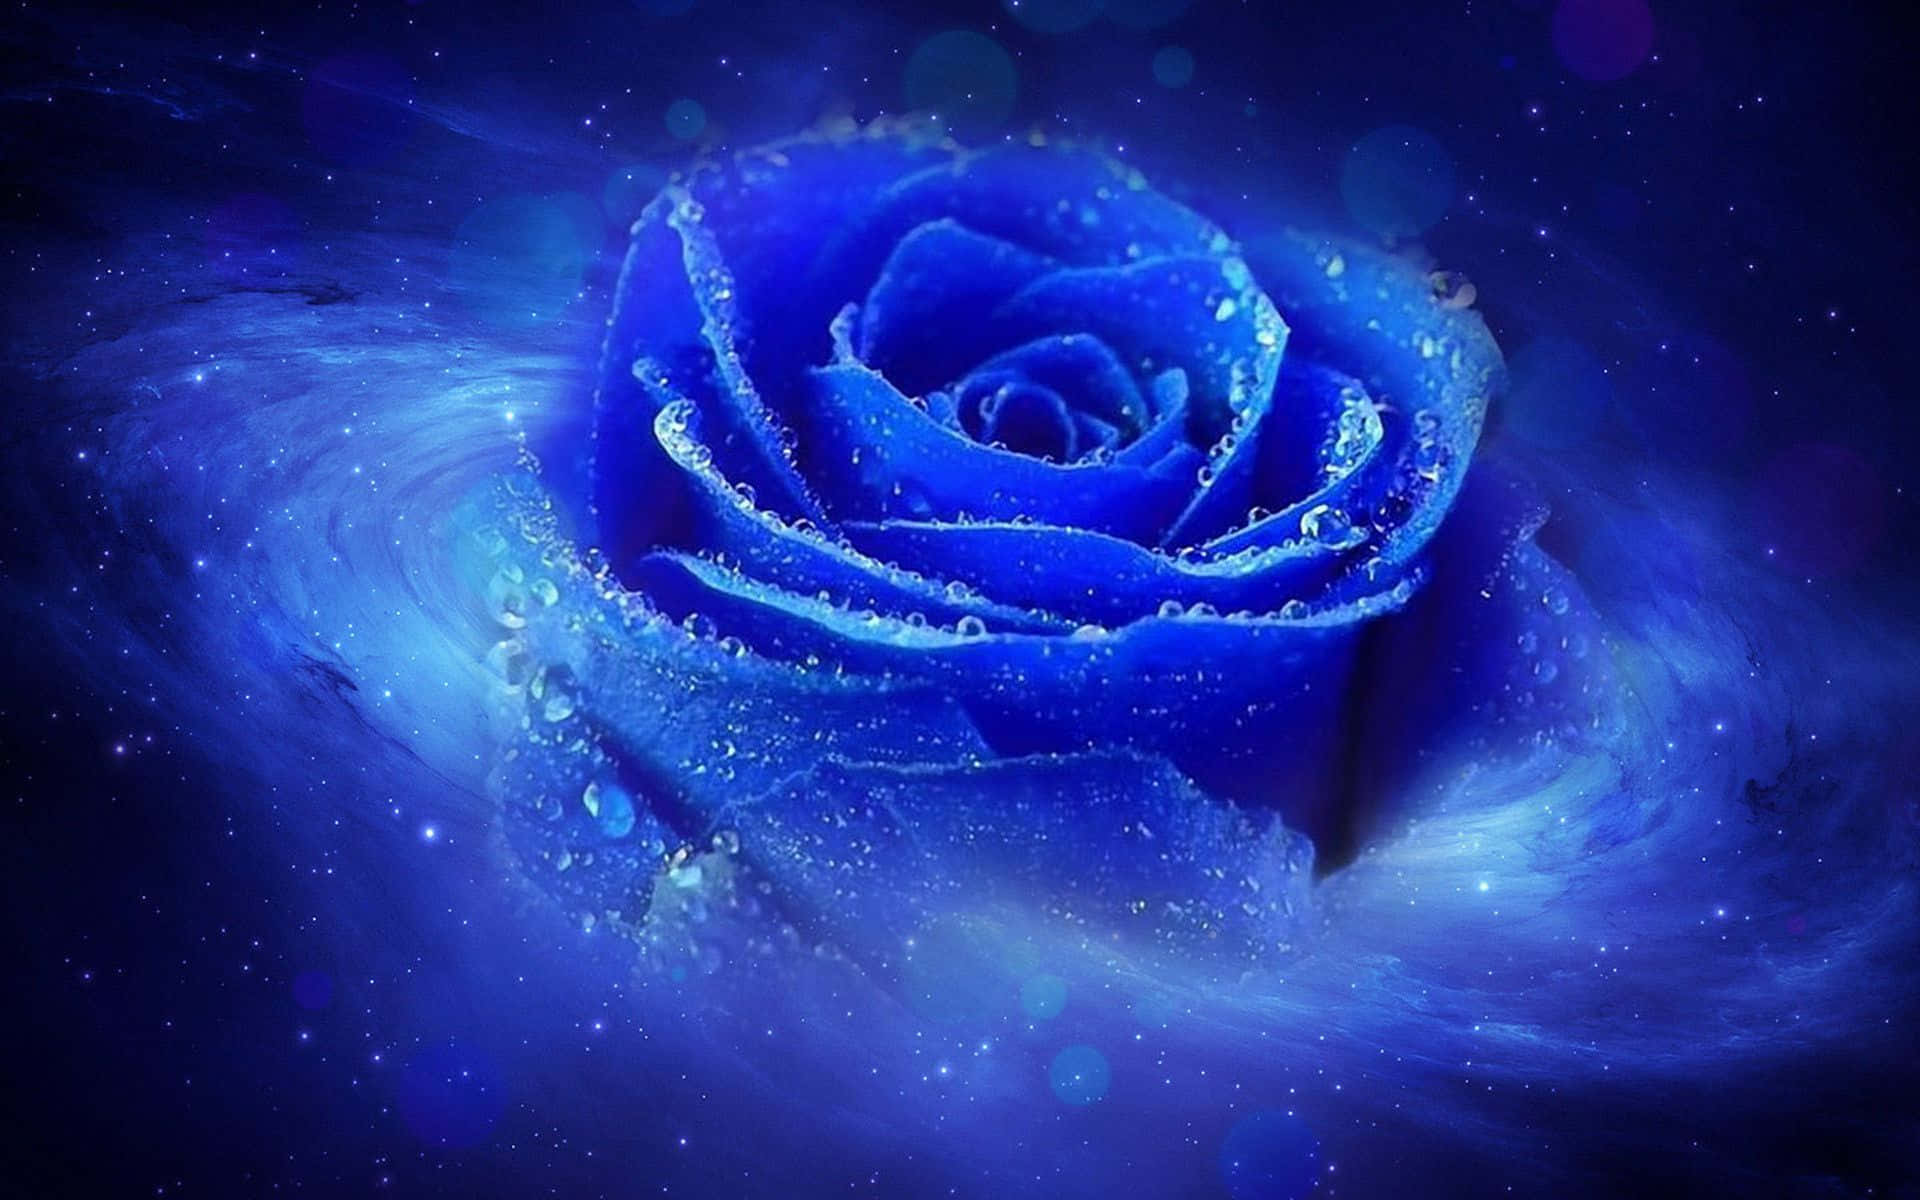 Eineätherische Blaue Rose Wallpaper